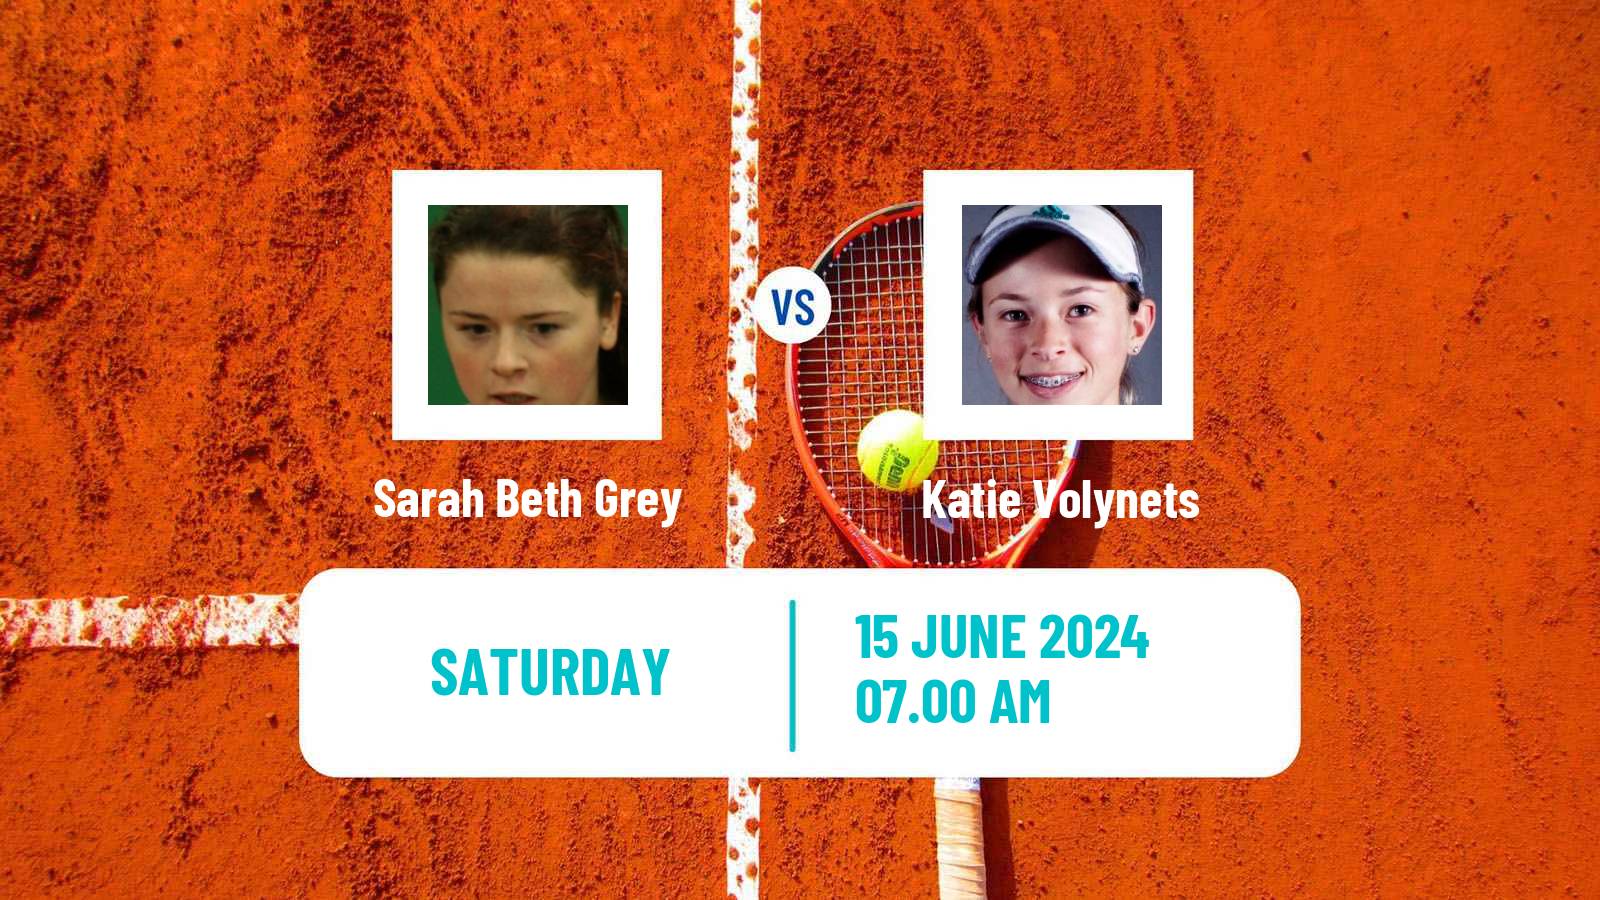 Tennis WTA Birmingham Sarah Beth Grey - Katie Volynets